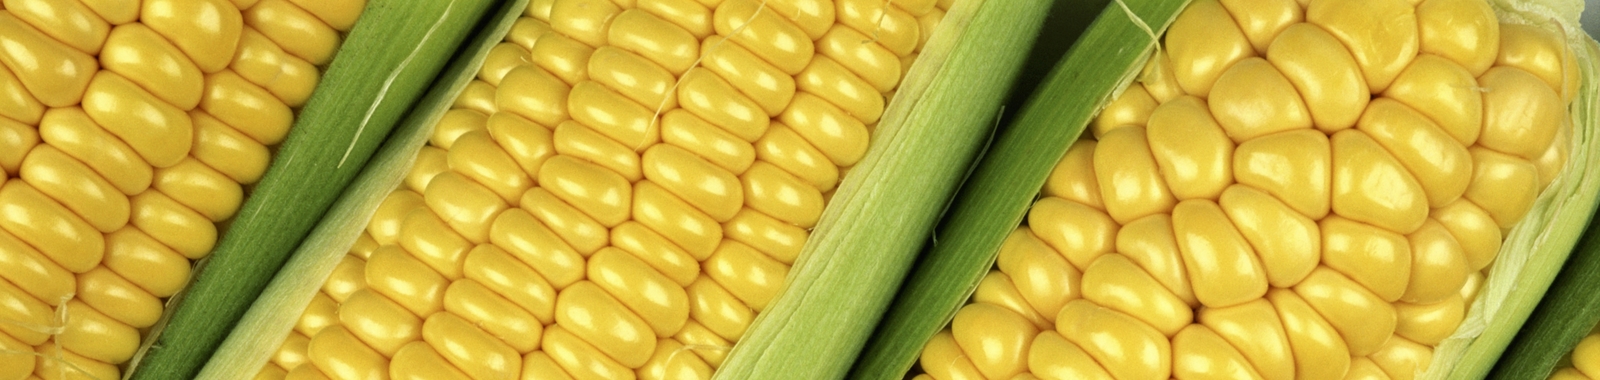 Zlepšování kvality kukuřice správnou výživou